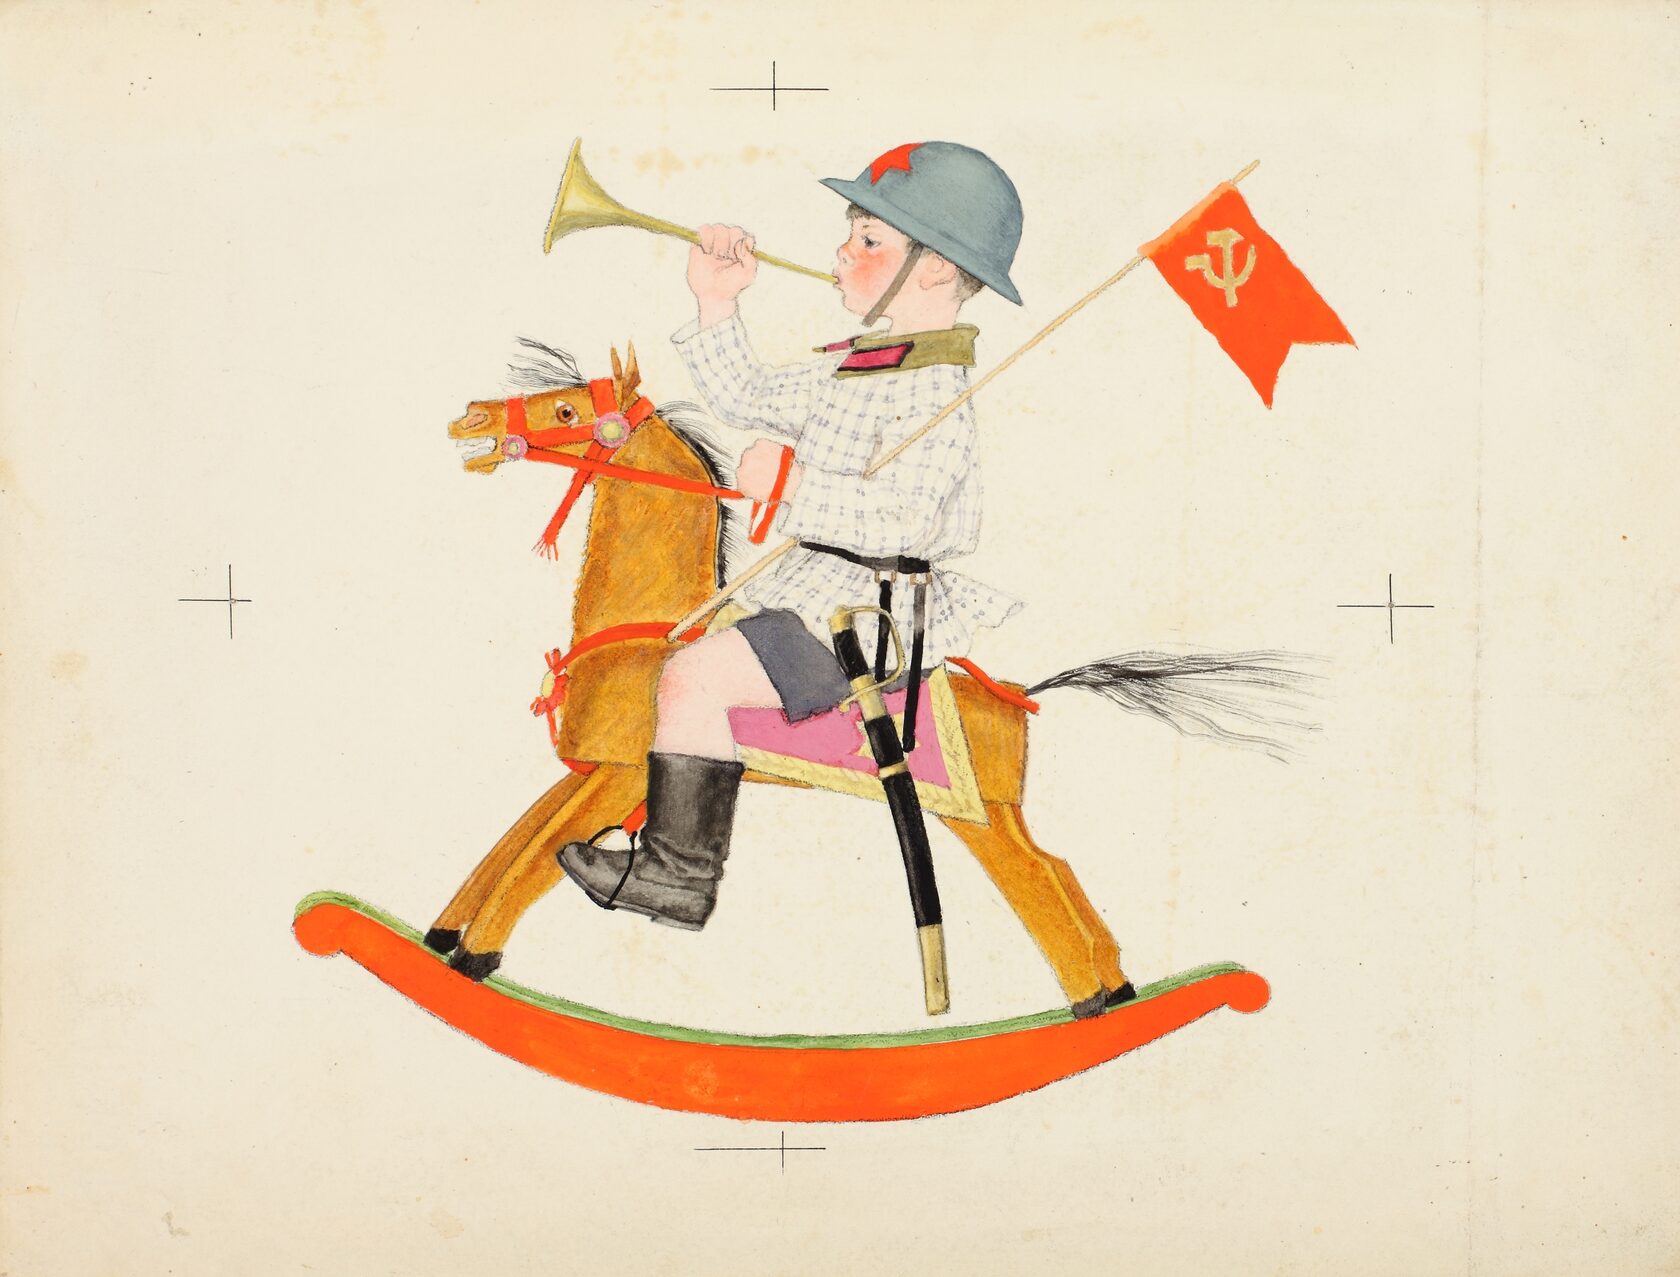 Иллюстрация к стихотворению «Трубач». К циклу стихотворений С.Я. Маршака «Мы военные».1938 